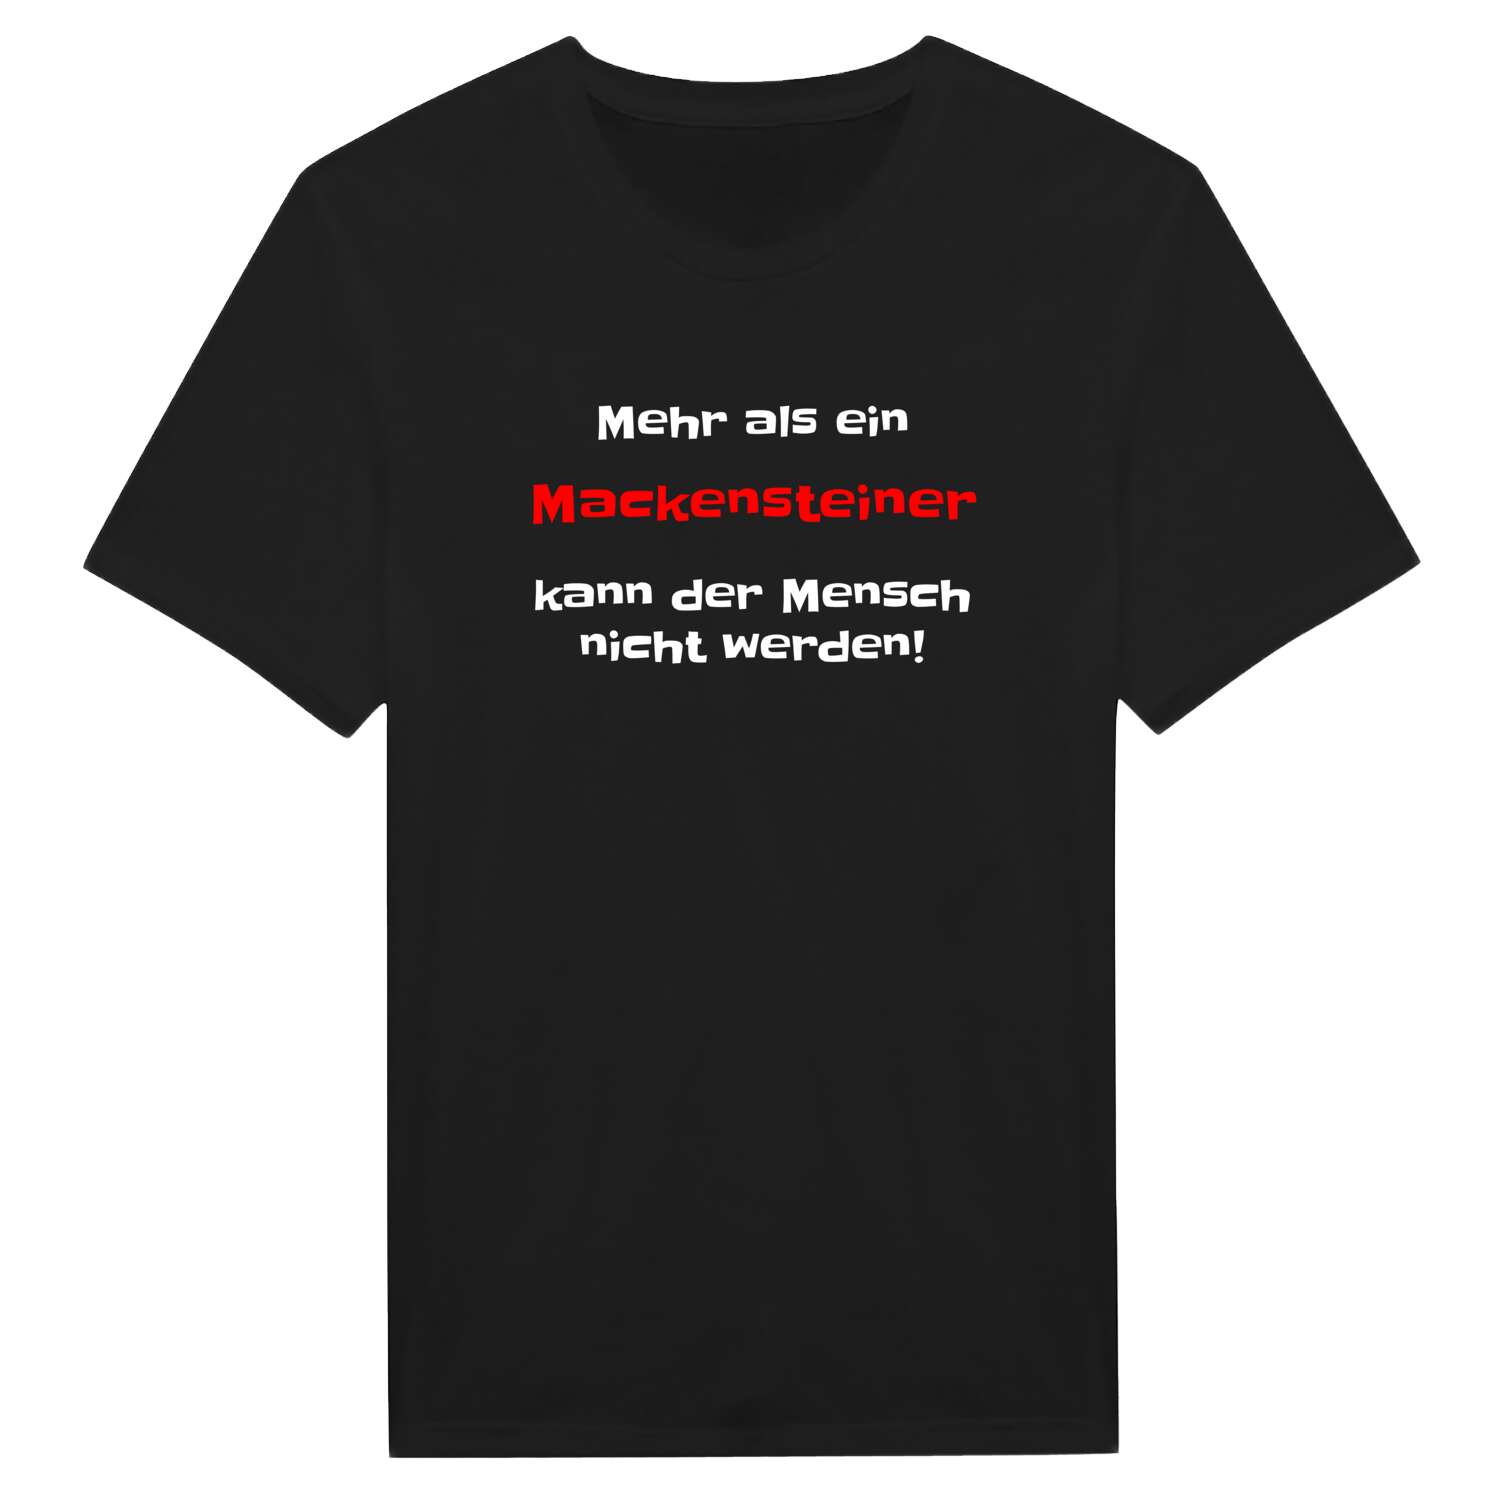 Mackenstein T-Shirt »Mehr als ein«